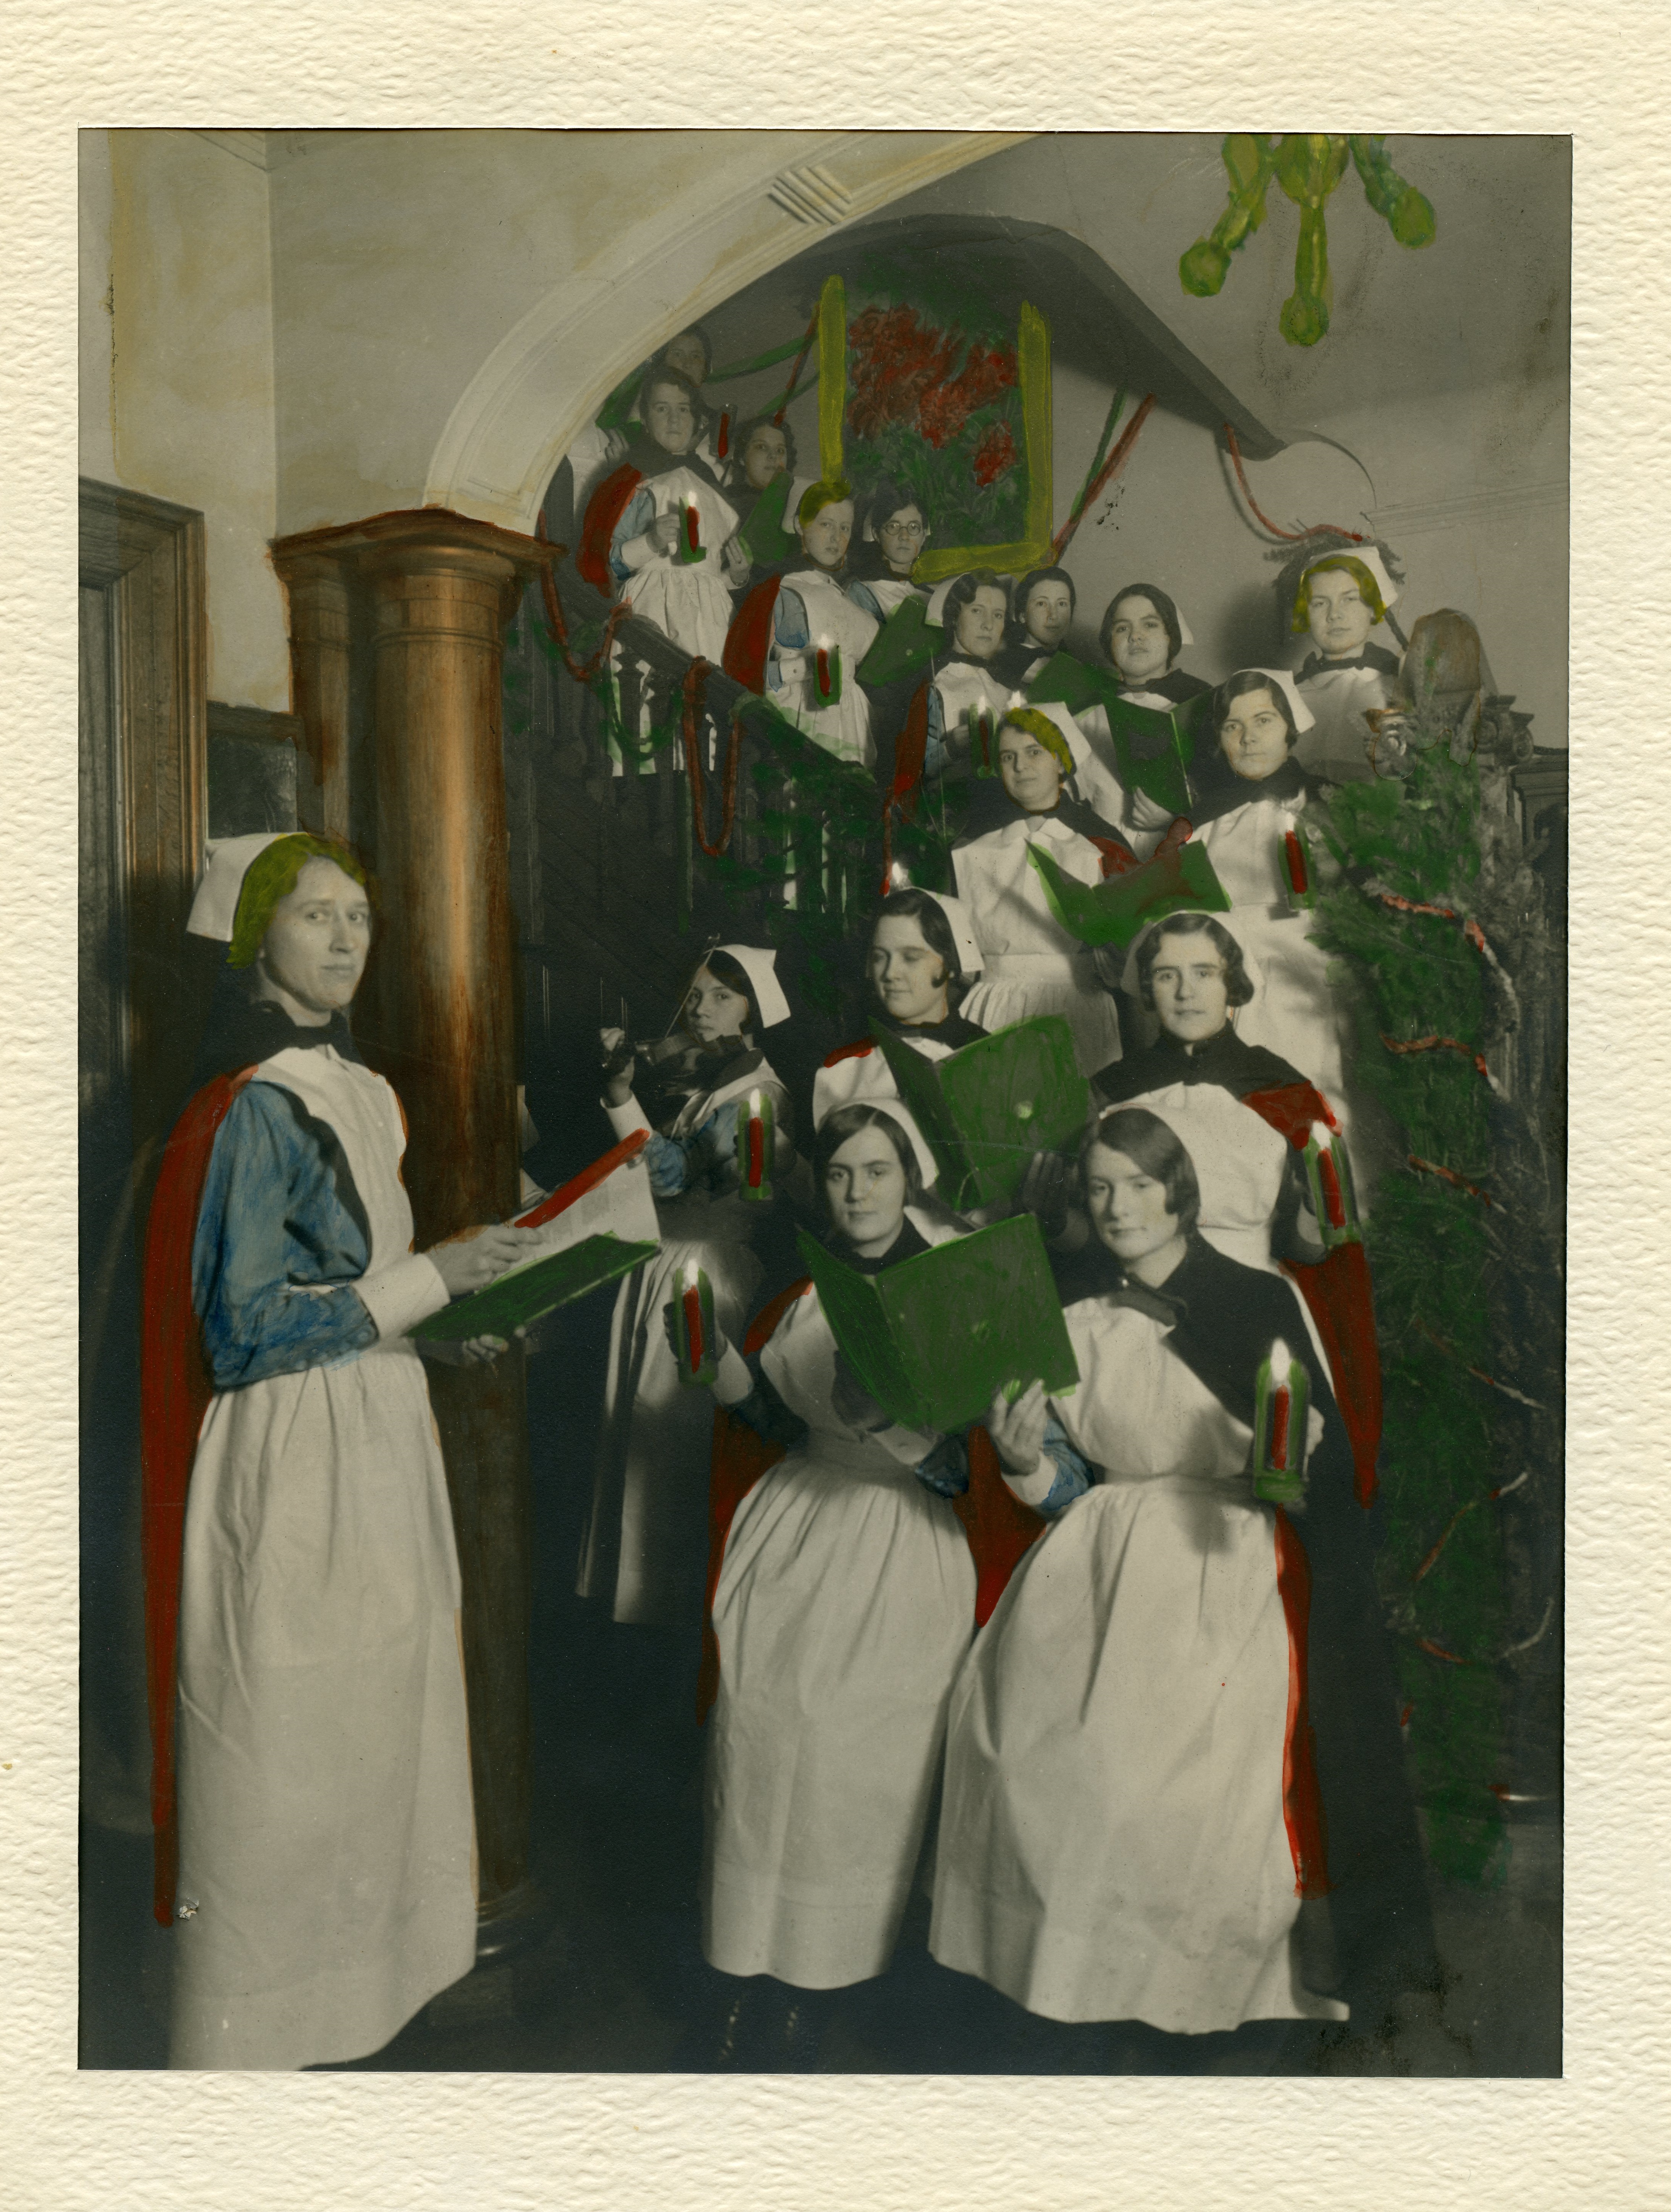 Des infirmières tenant bougies et recueils de cantiques s’alignent sur l’escalier dans une vieille photo. Une infirmière les dirige pendant qu’une autre joue du violon.